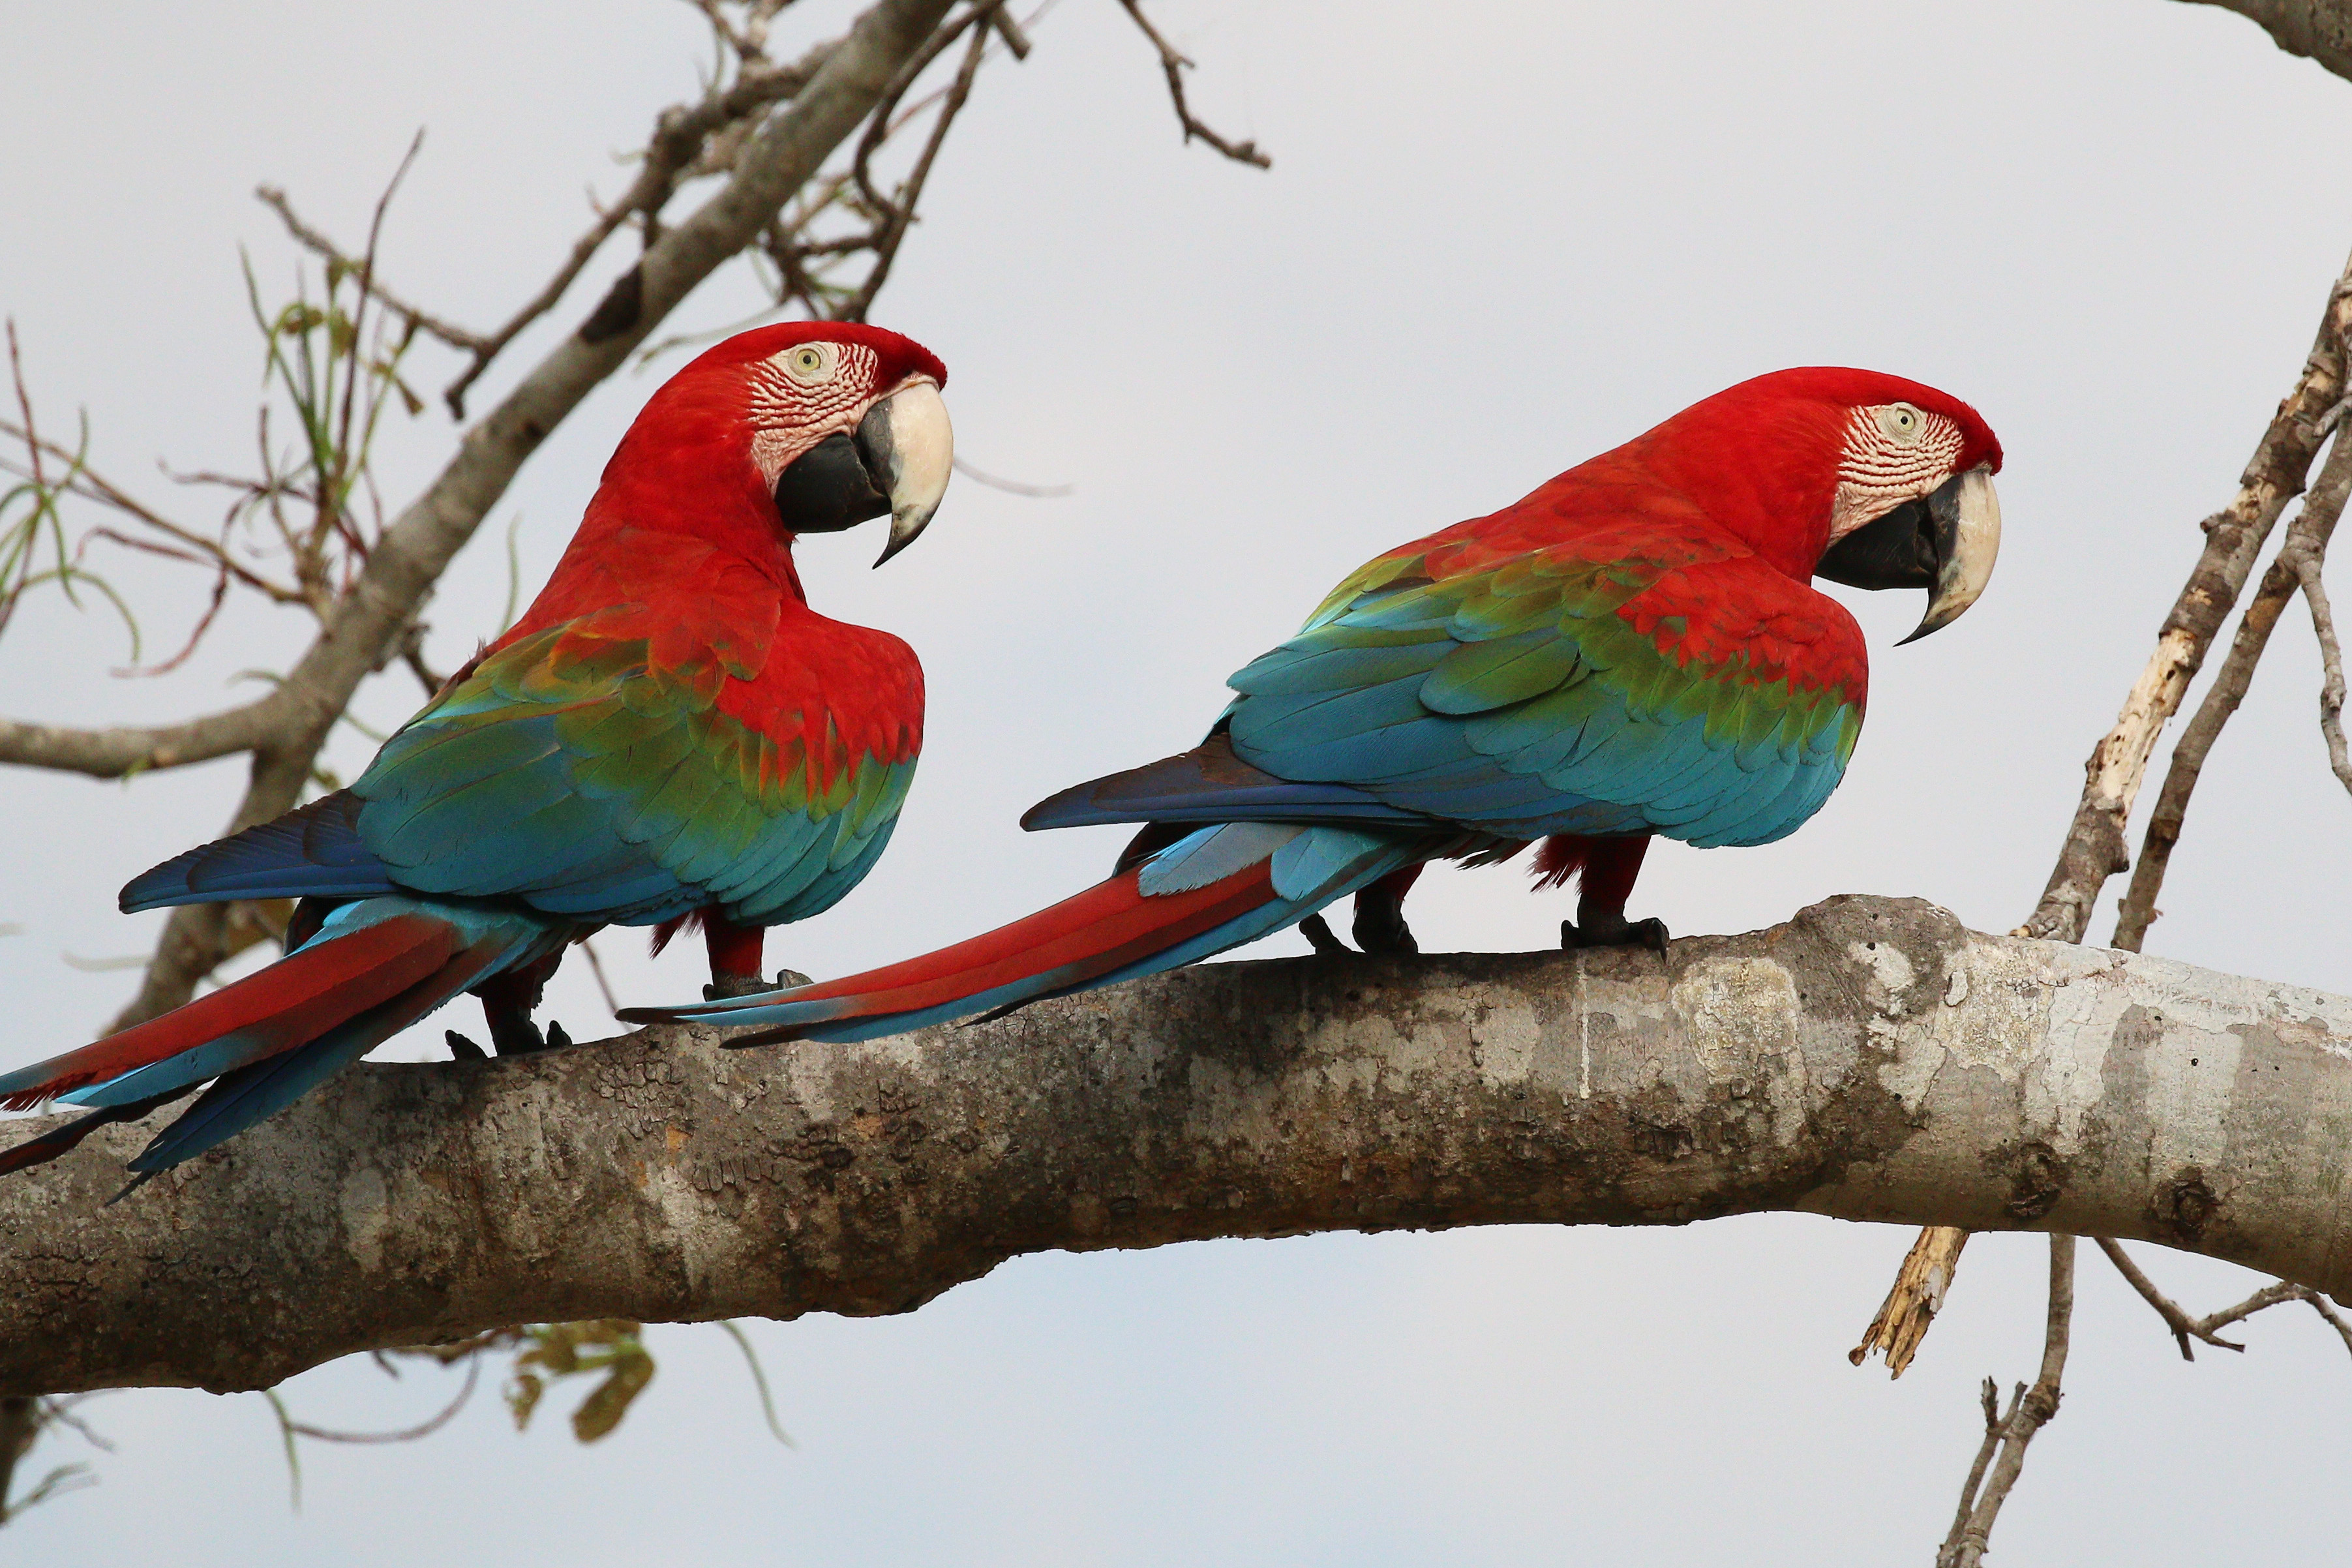 Red-and-green macaws (Ara chloropterus)